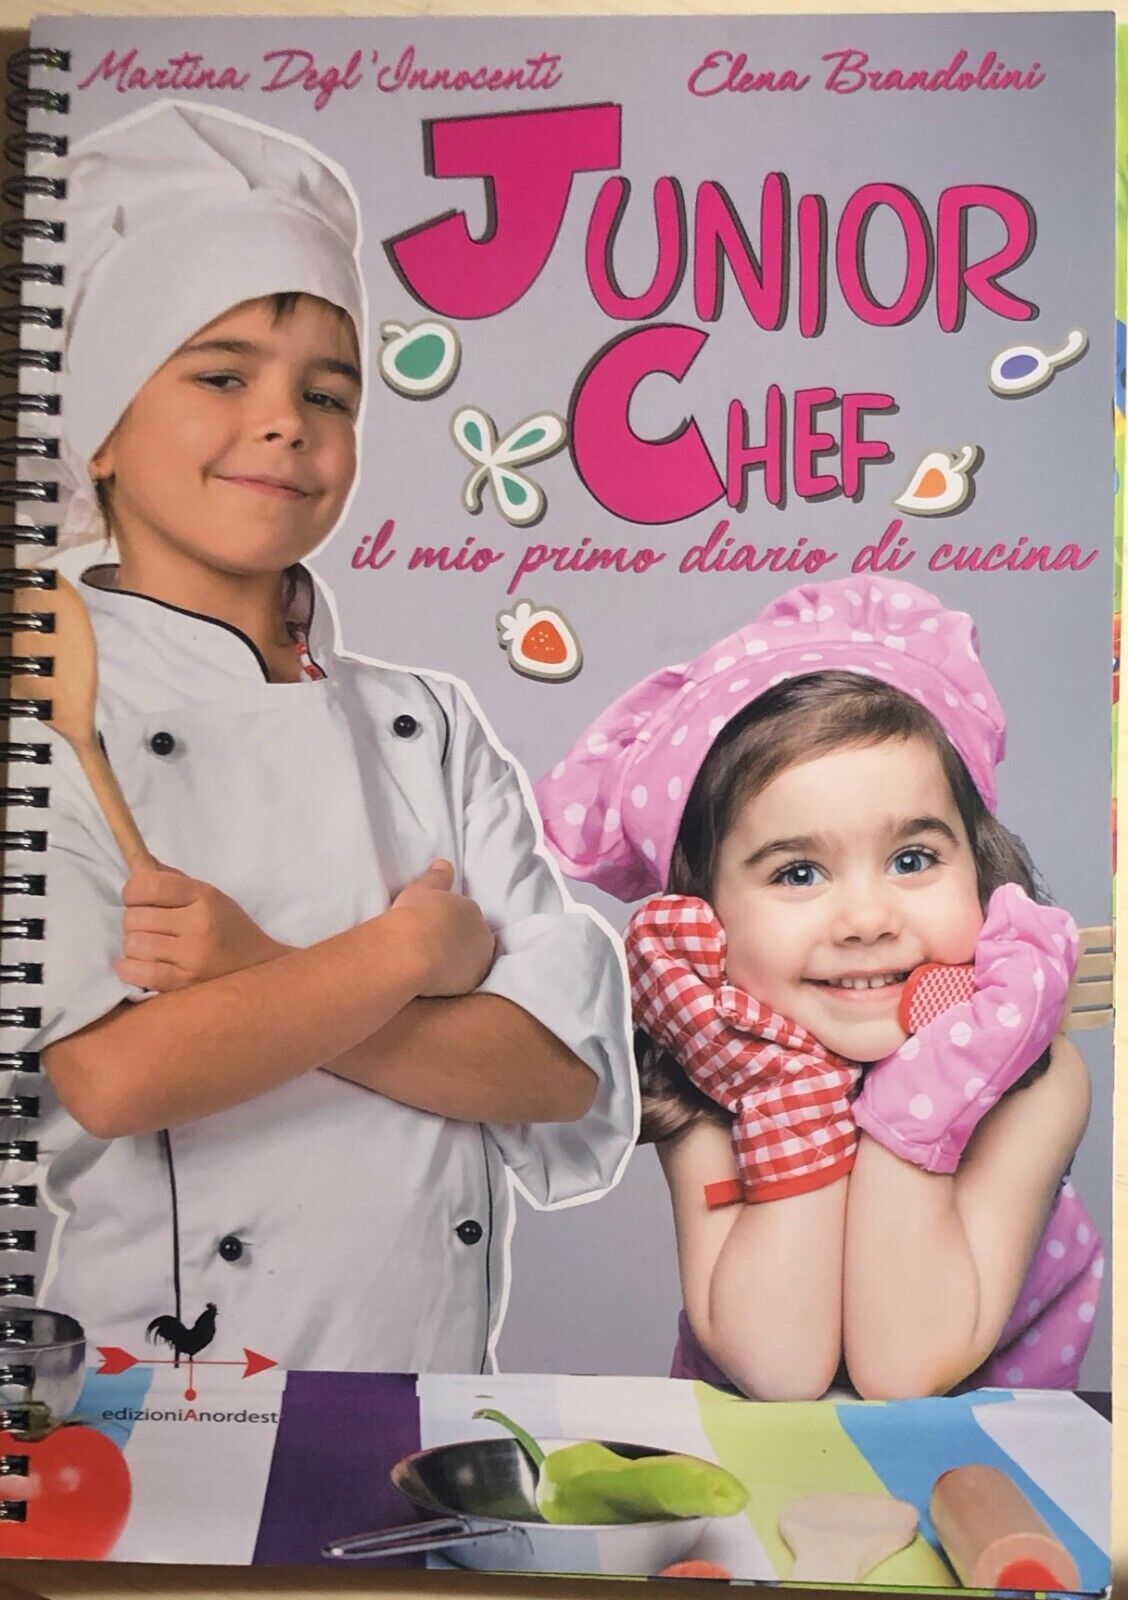 Junior chef di DegL'Innocenti-Brandolini, 2014, Edizionianordest